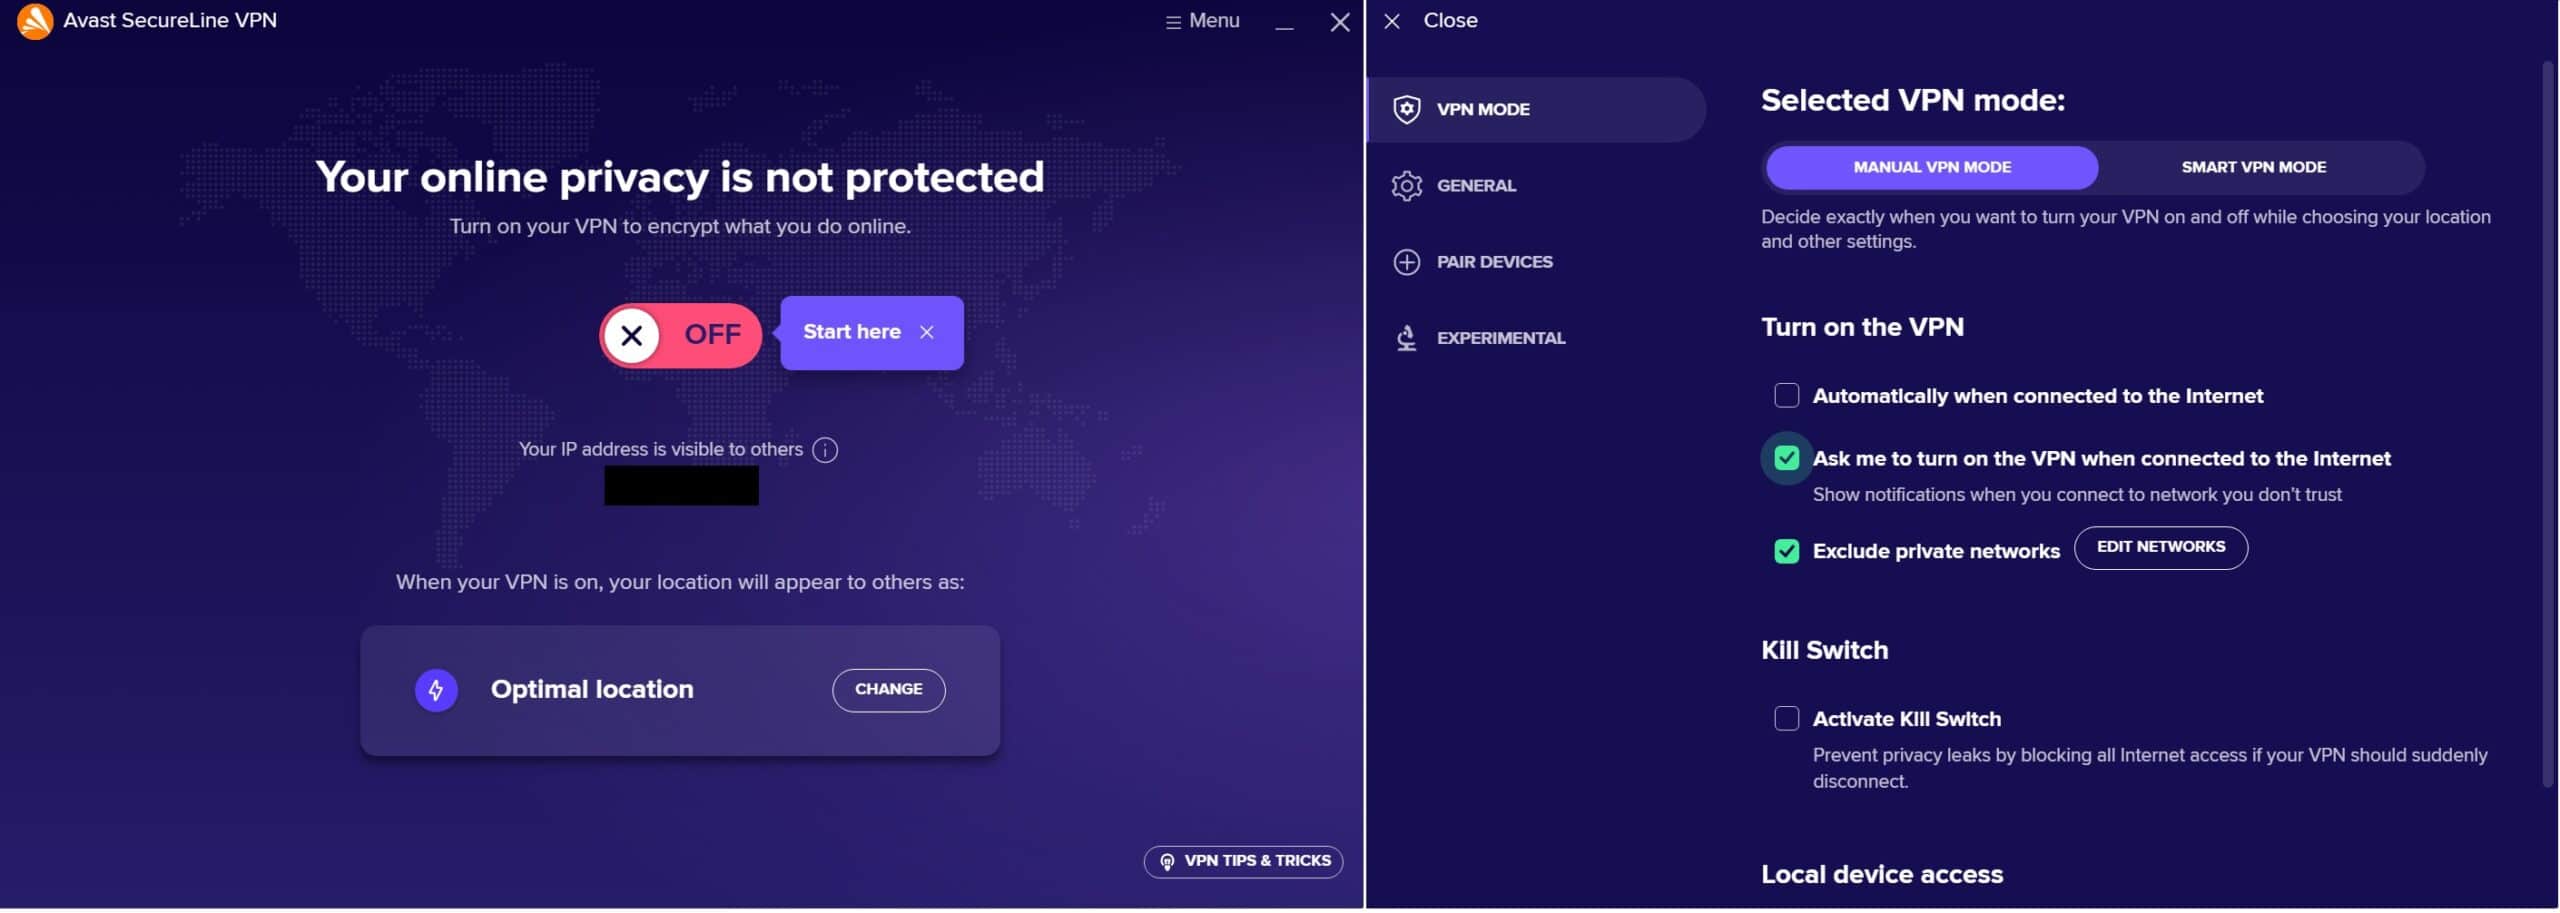 Avast SecureLine's Windows app